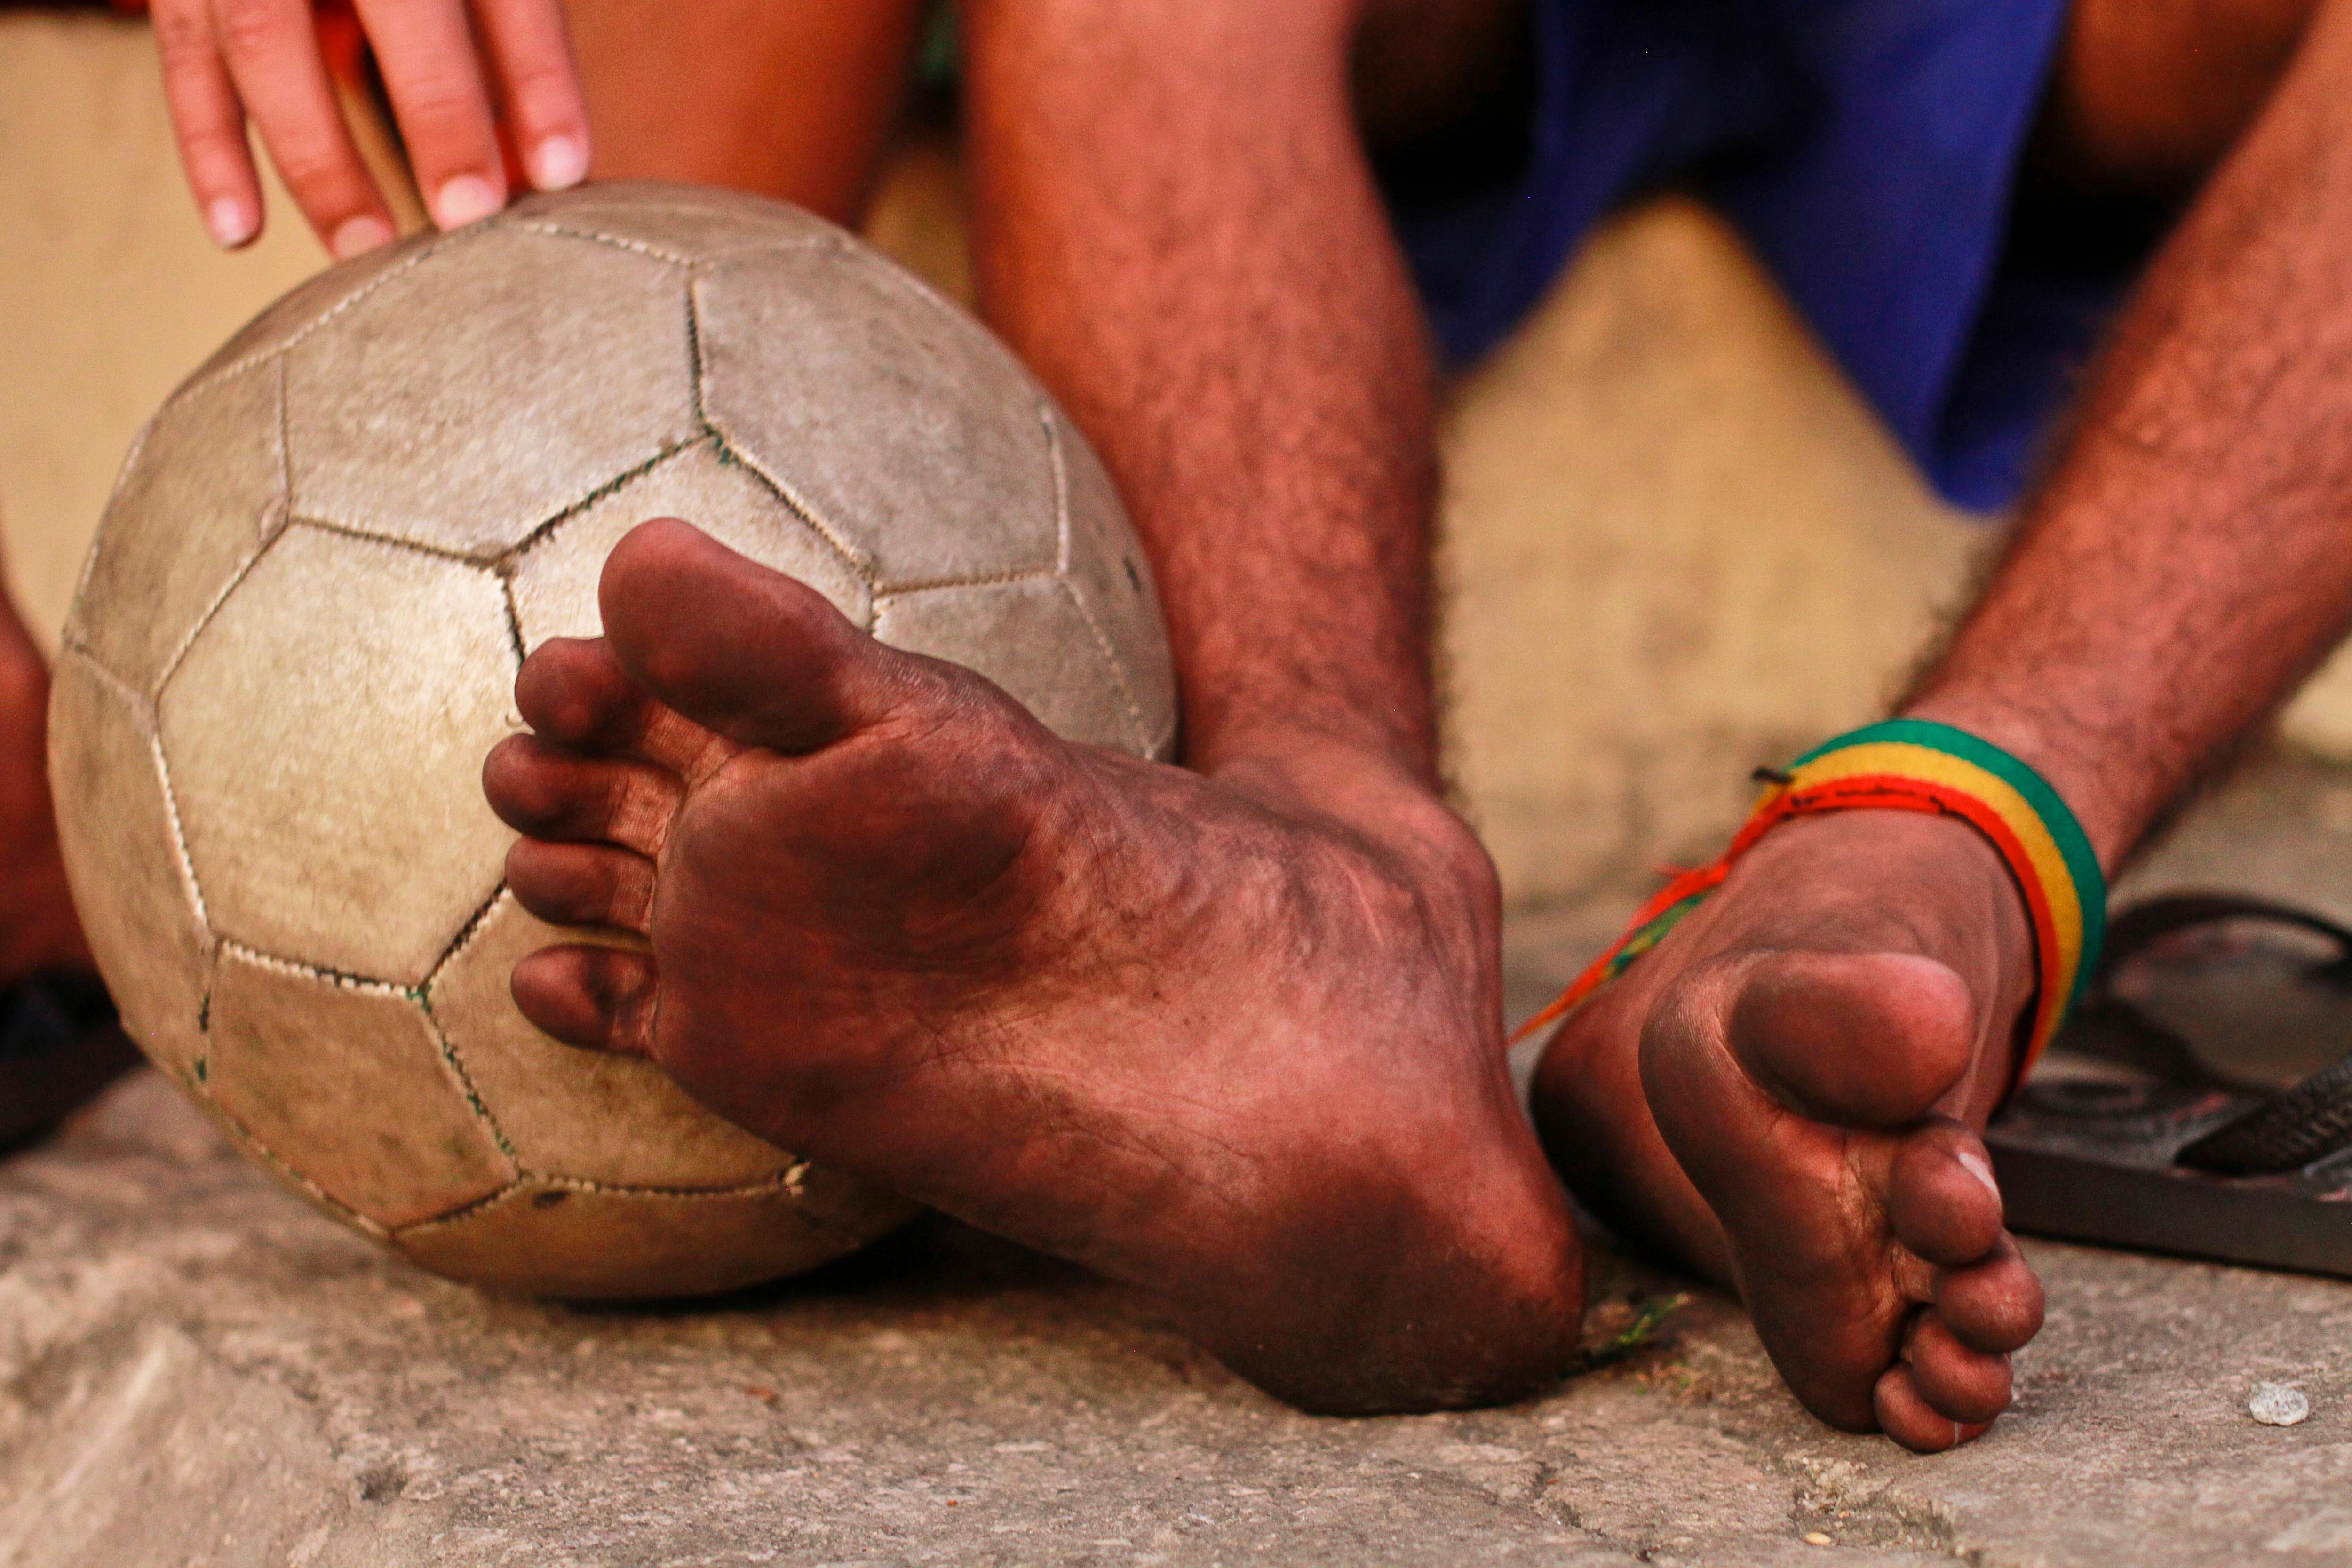 Apenas um a cada cinco jovens aprende a jogar futebol nas ruas, aponta  pesquisa